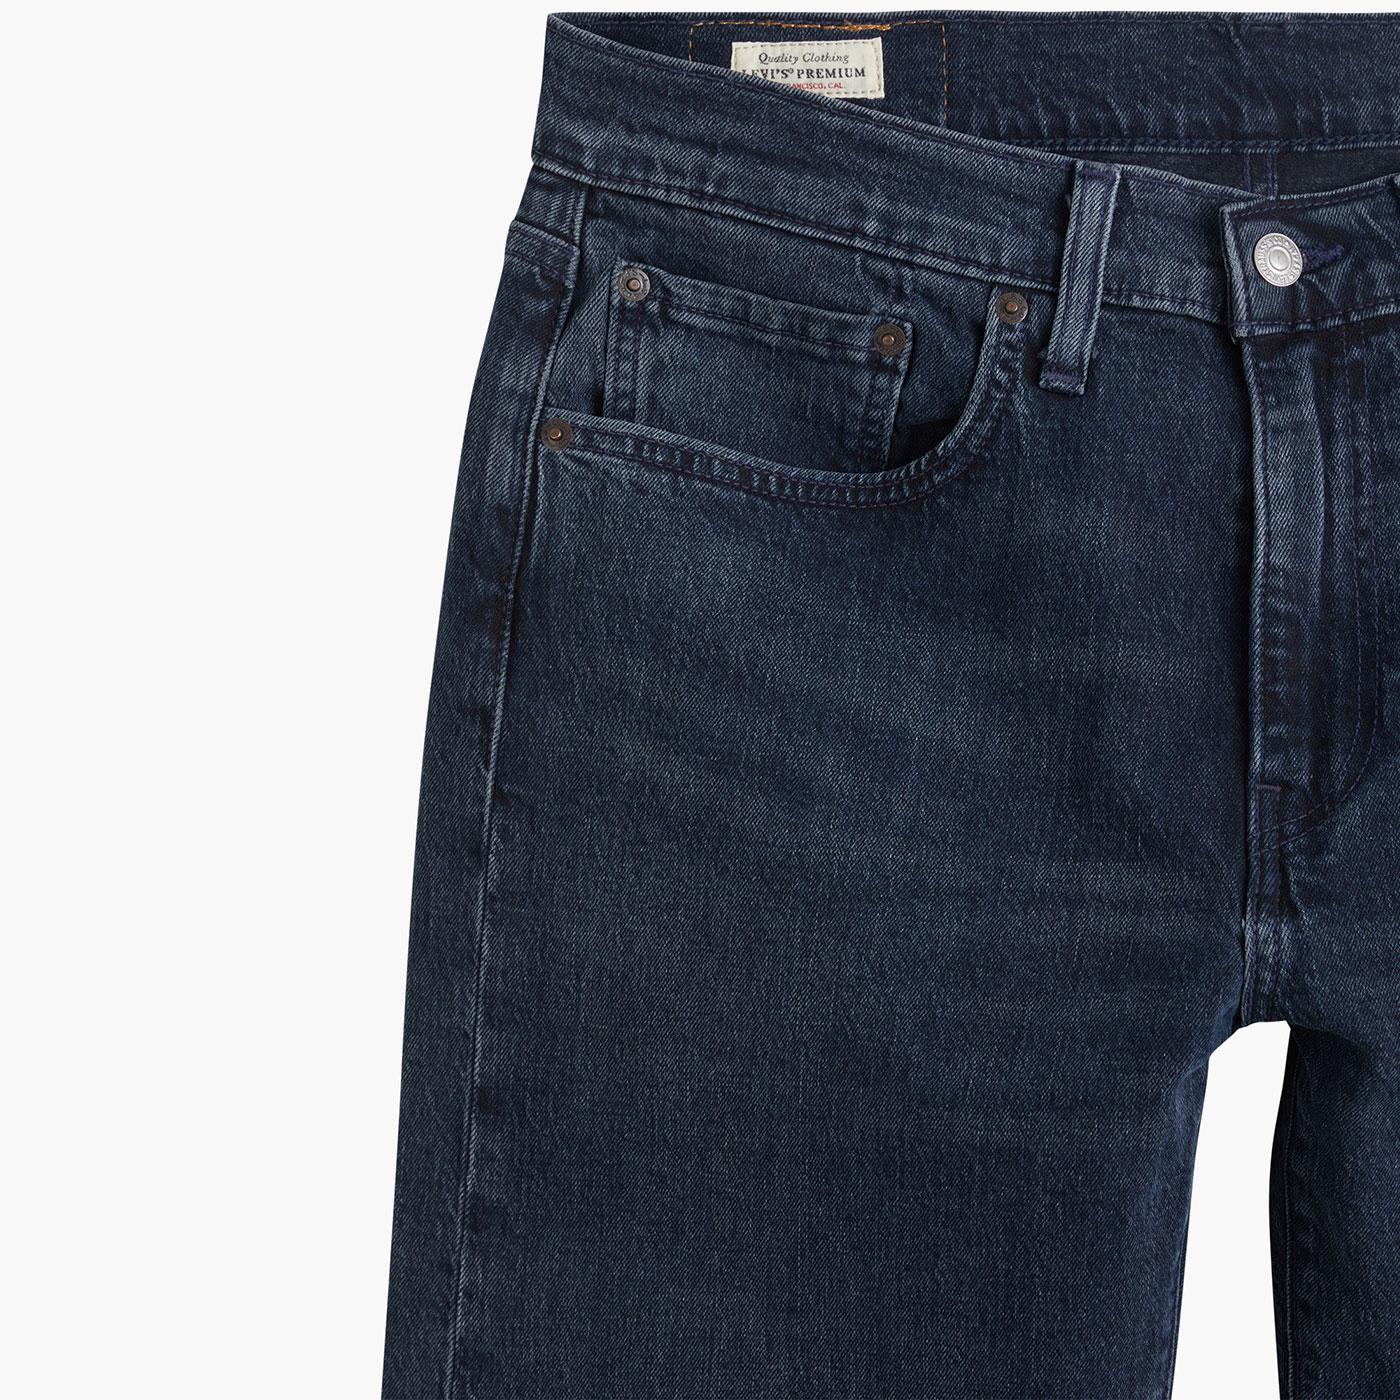 LEVI'S 502 Retro Mod Regular Taper Jeans in Sugar High